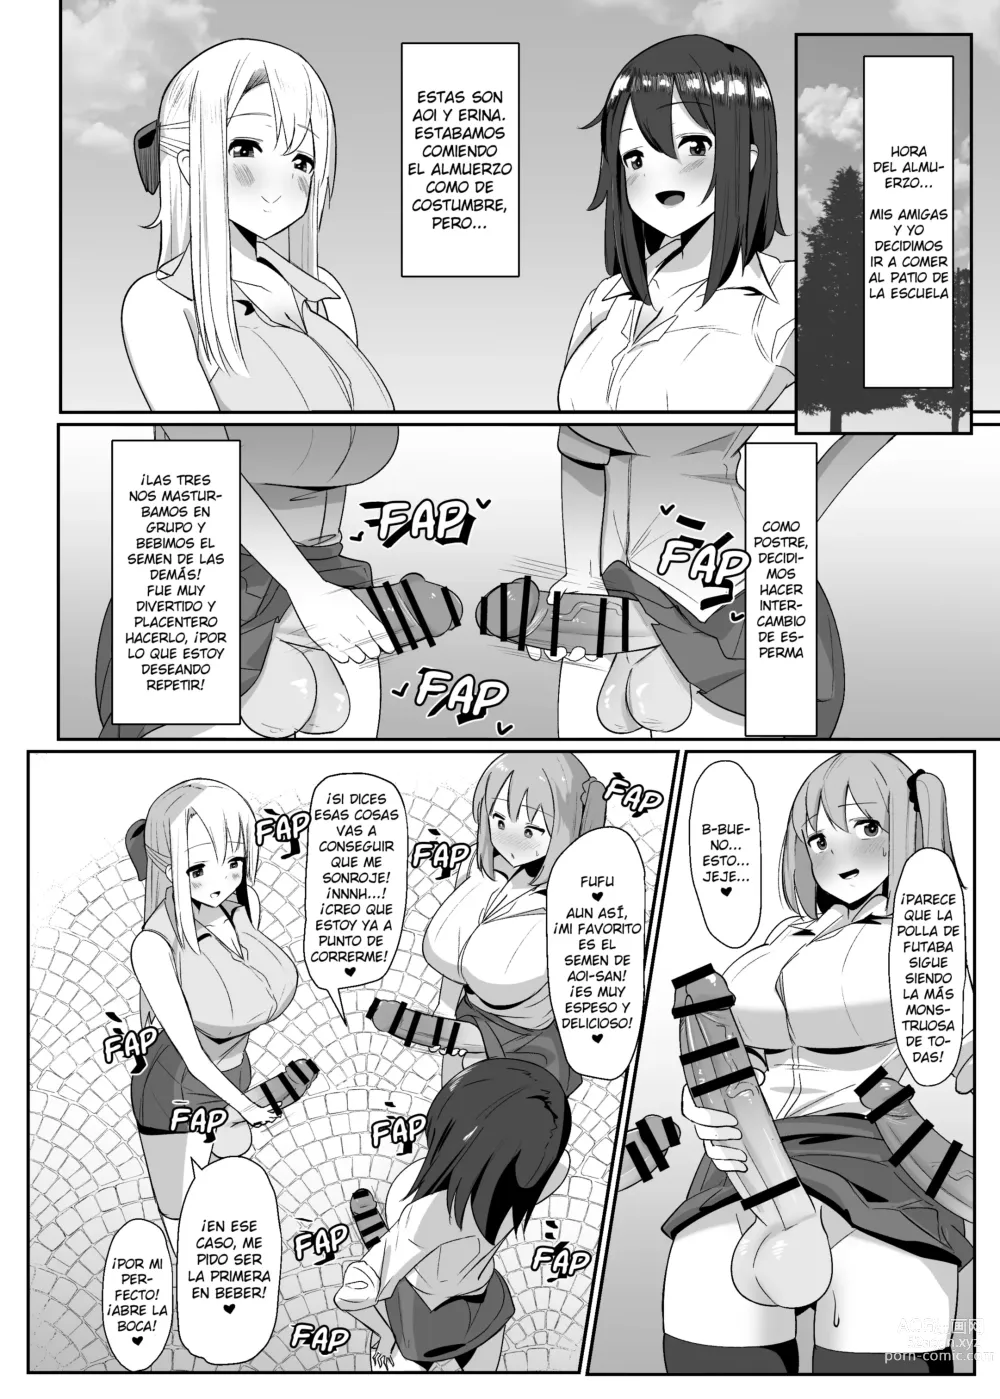 Page 13 of doujinshi ¡Un día me desperté y de repente hacer eyacular a las futanaris era lo más normal del mundo!